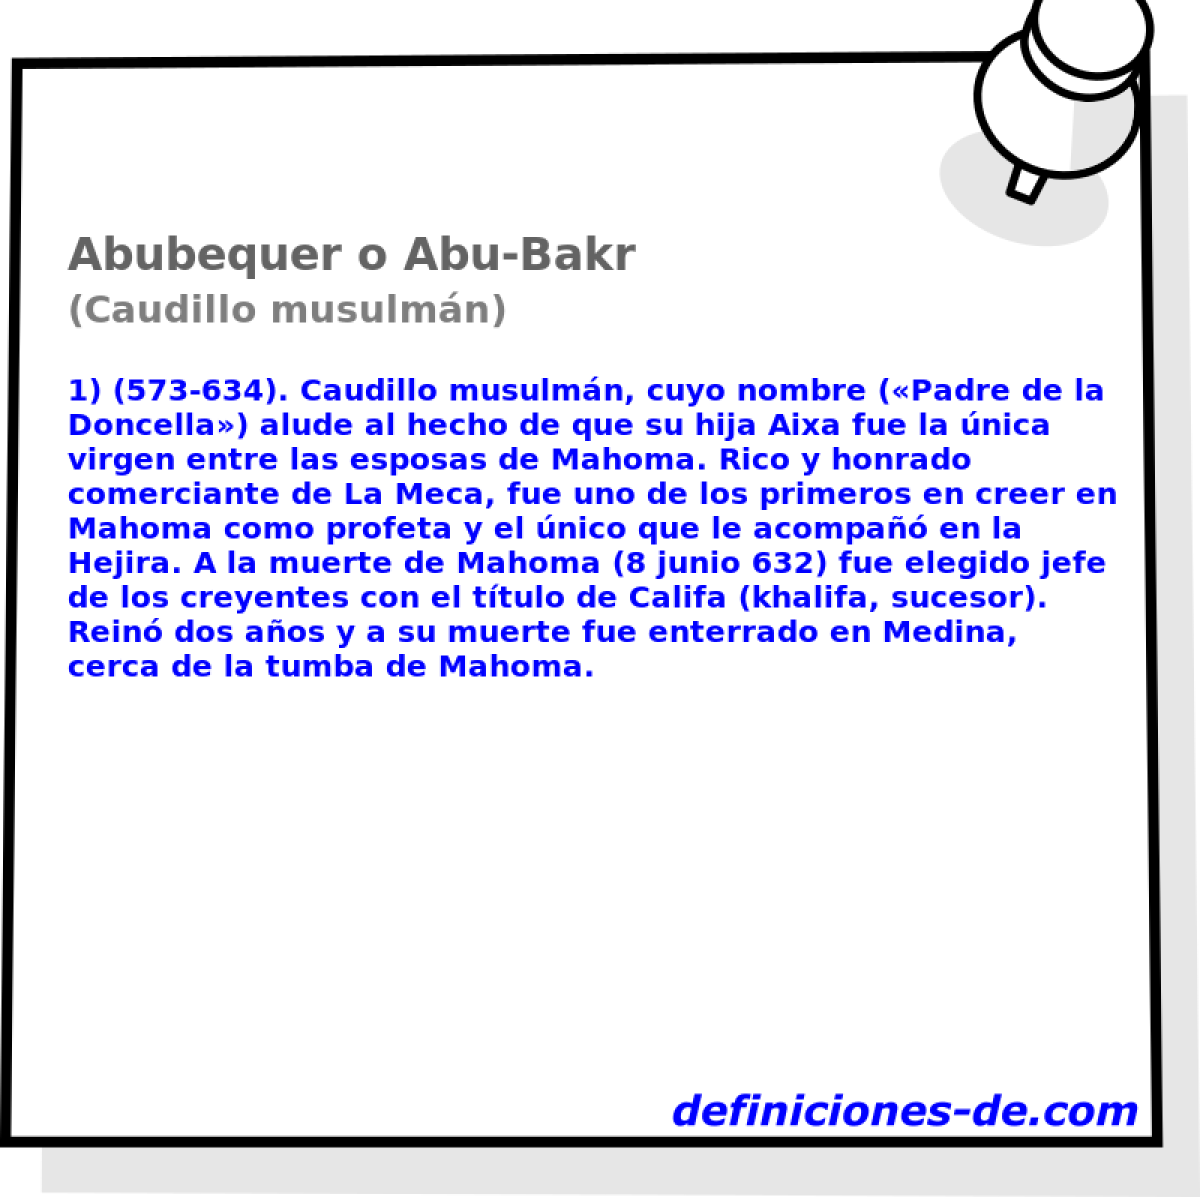 Abubequer o Abu-Bakr (Caudillo musulmn)